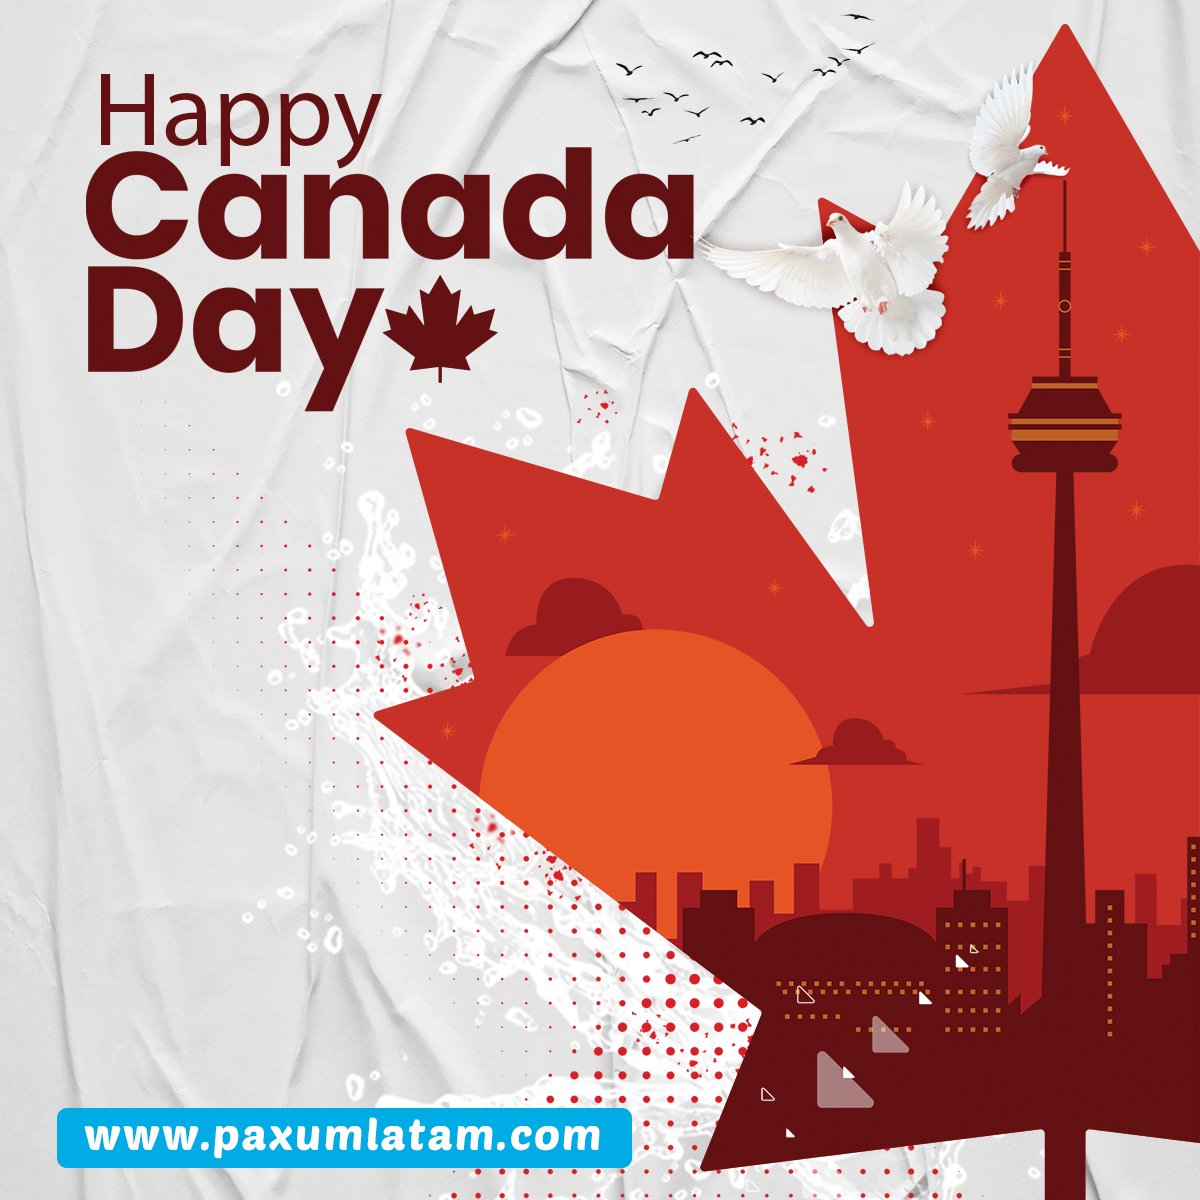 🍁Happy Canada Day🍁
#CanadaDay #canadaday2021 #canada #canada